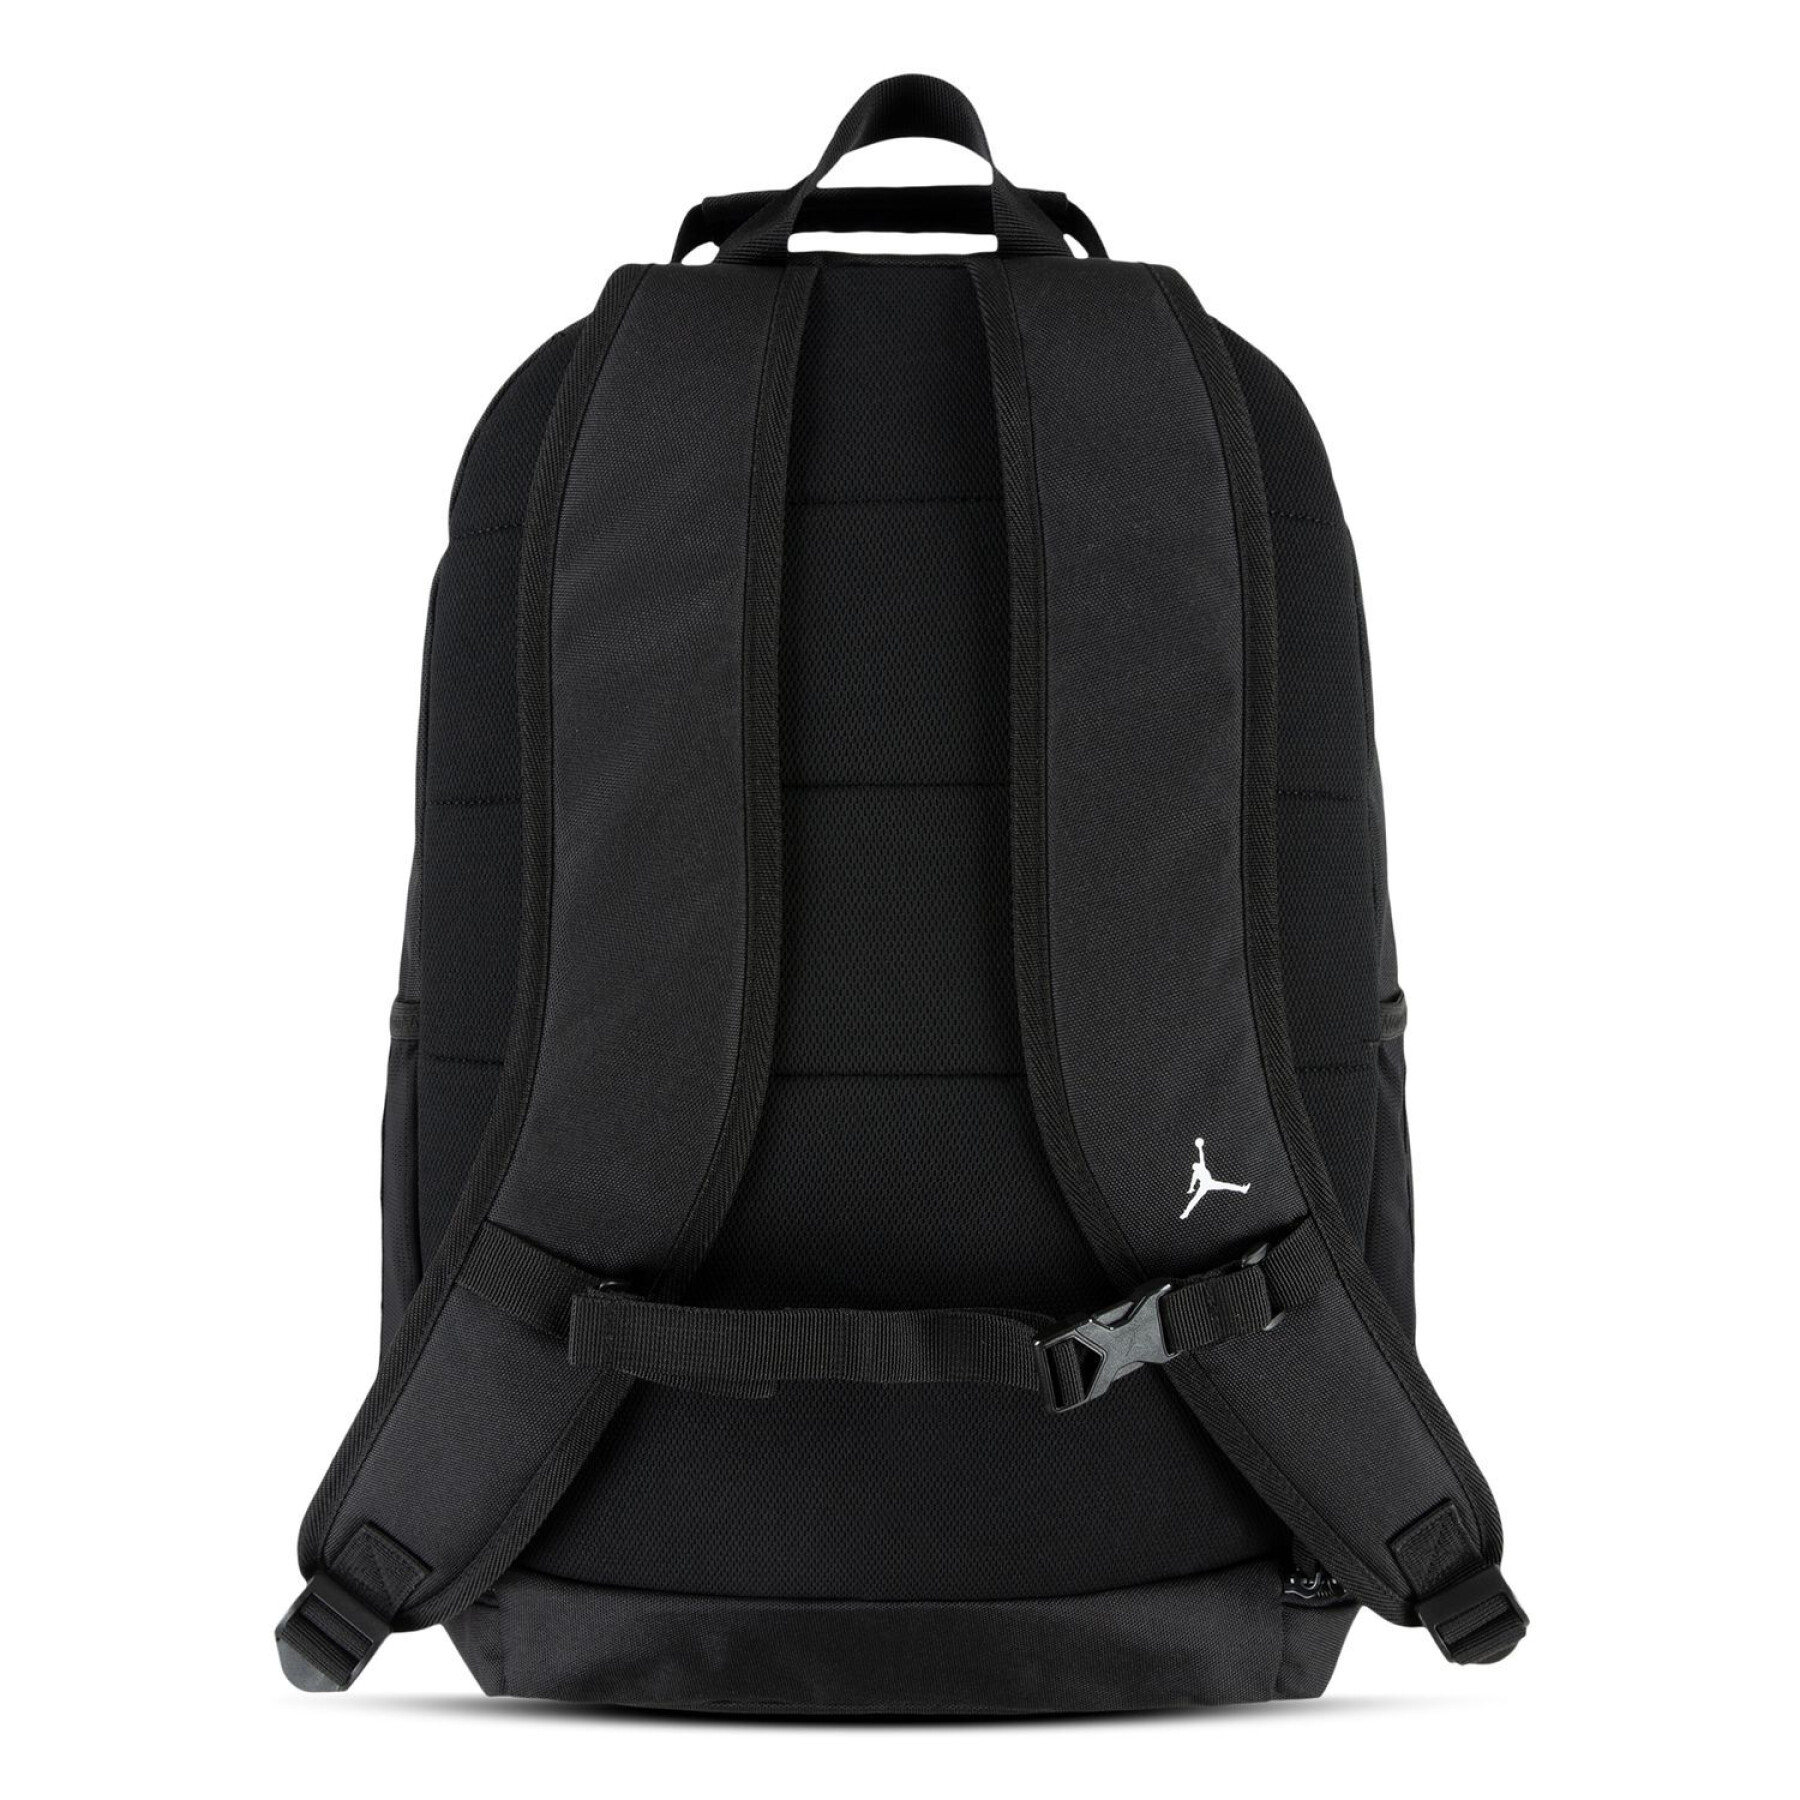 Children's backpack Jordan